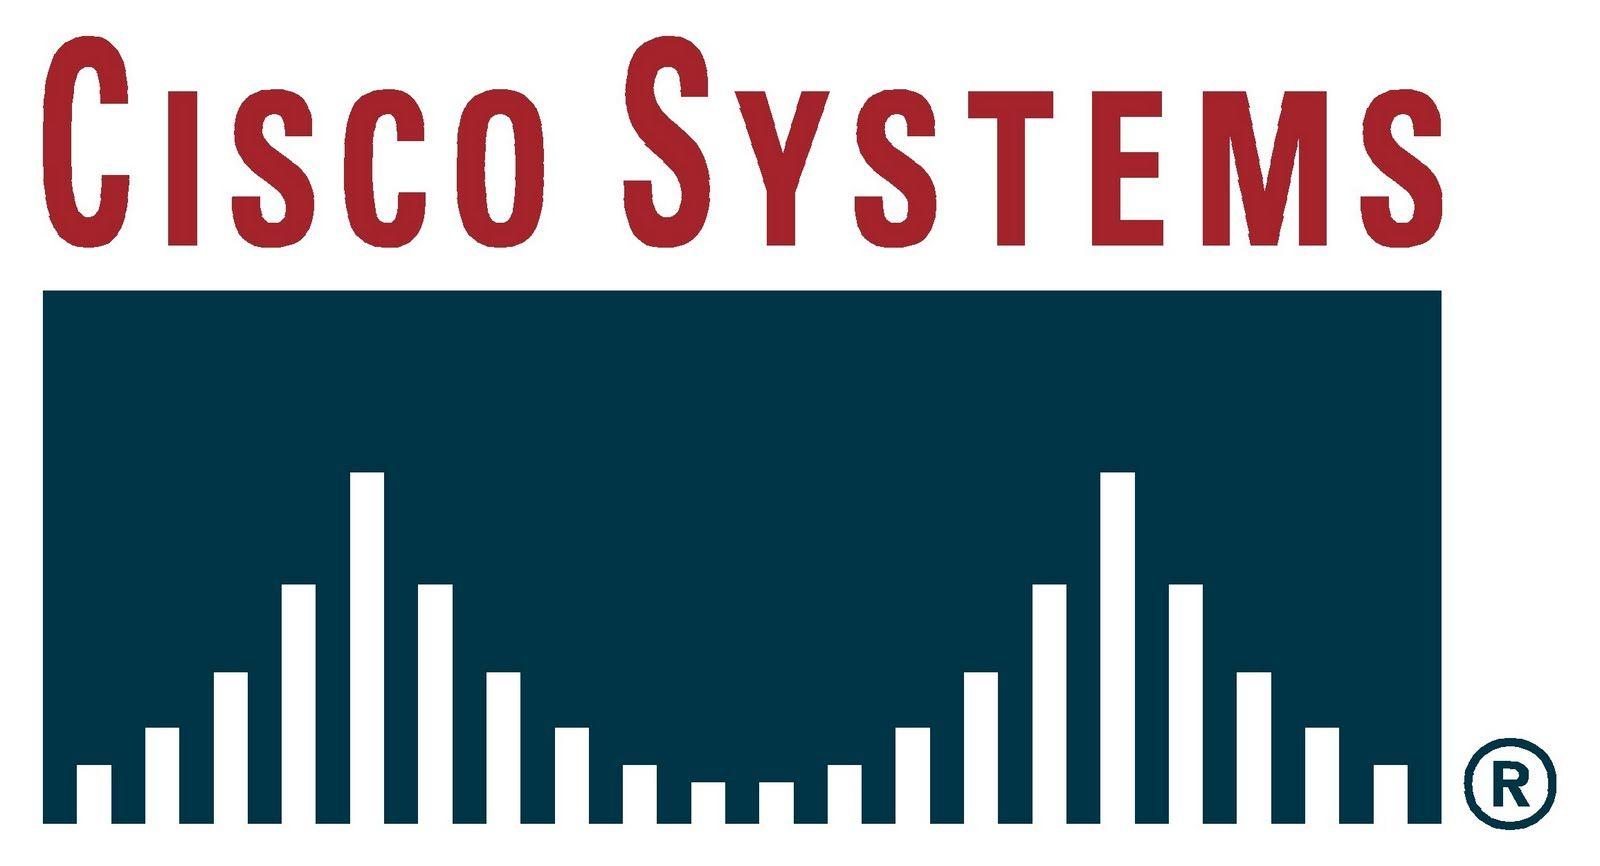 Cisco Company Logo - History of All Logos: Cisco Systems Logo History